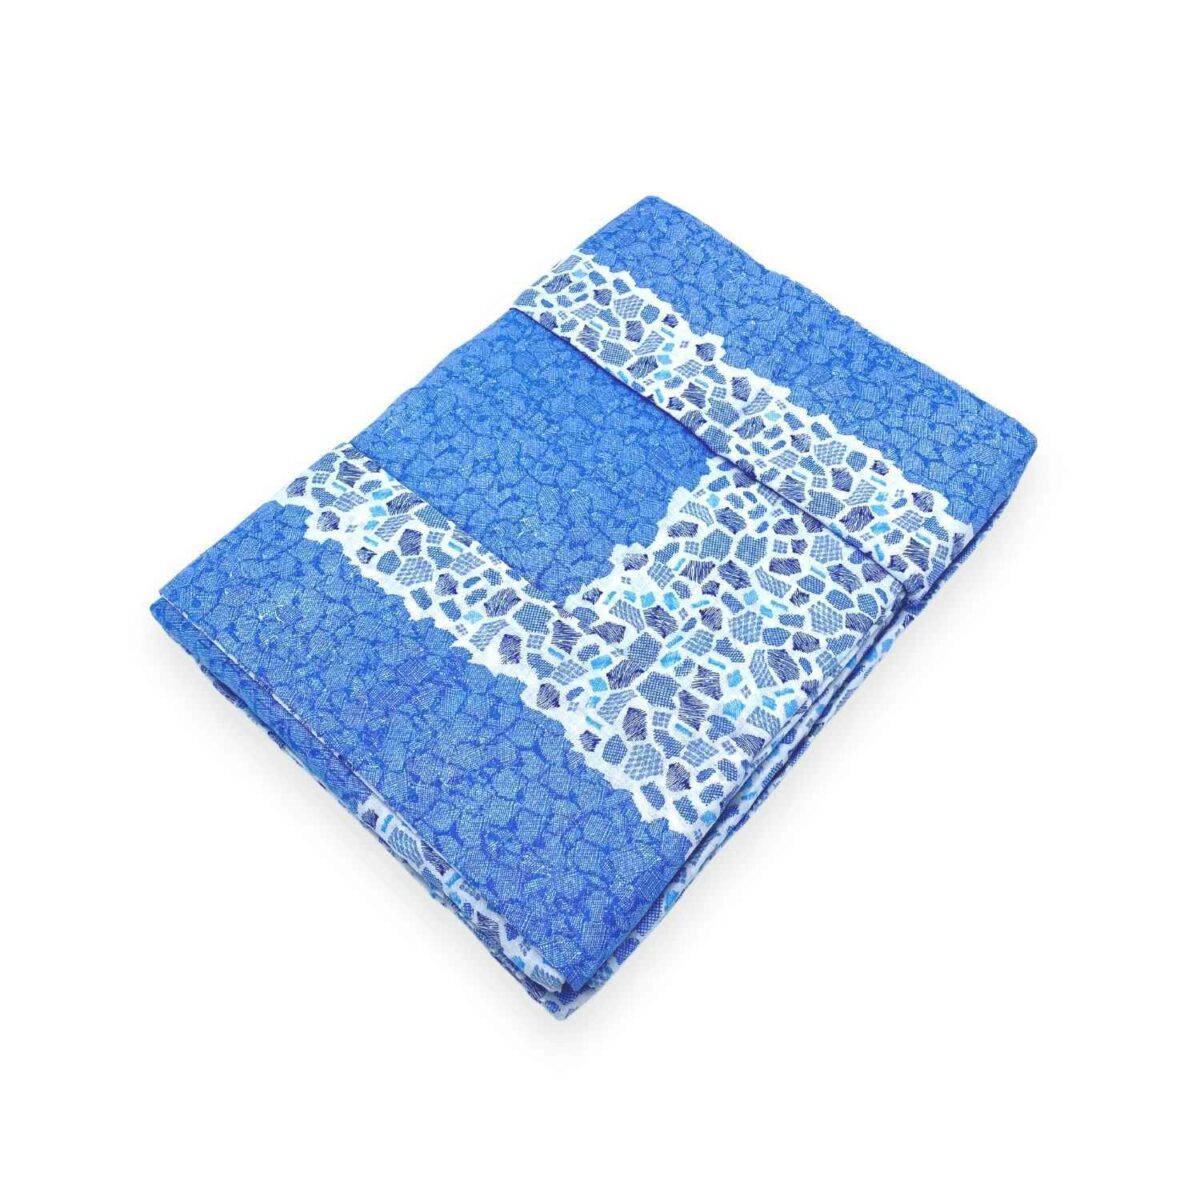 nashville-blu-pauline-completo-lenzuola-cotone-geometrico-pietre-sfumato-bianco-azzurro-bluette-avio-fold